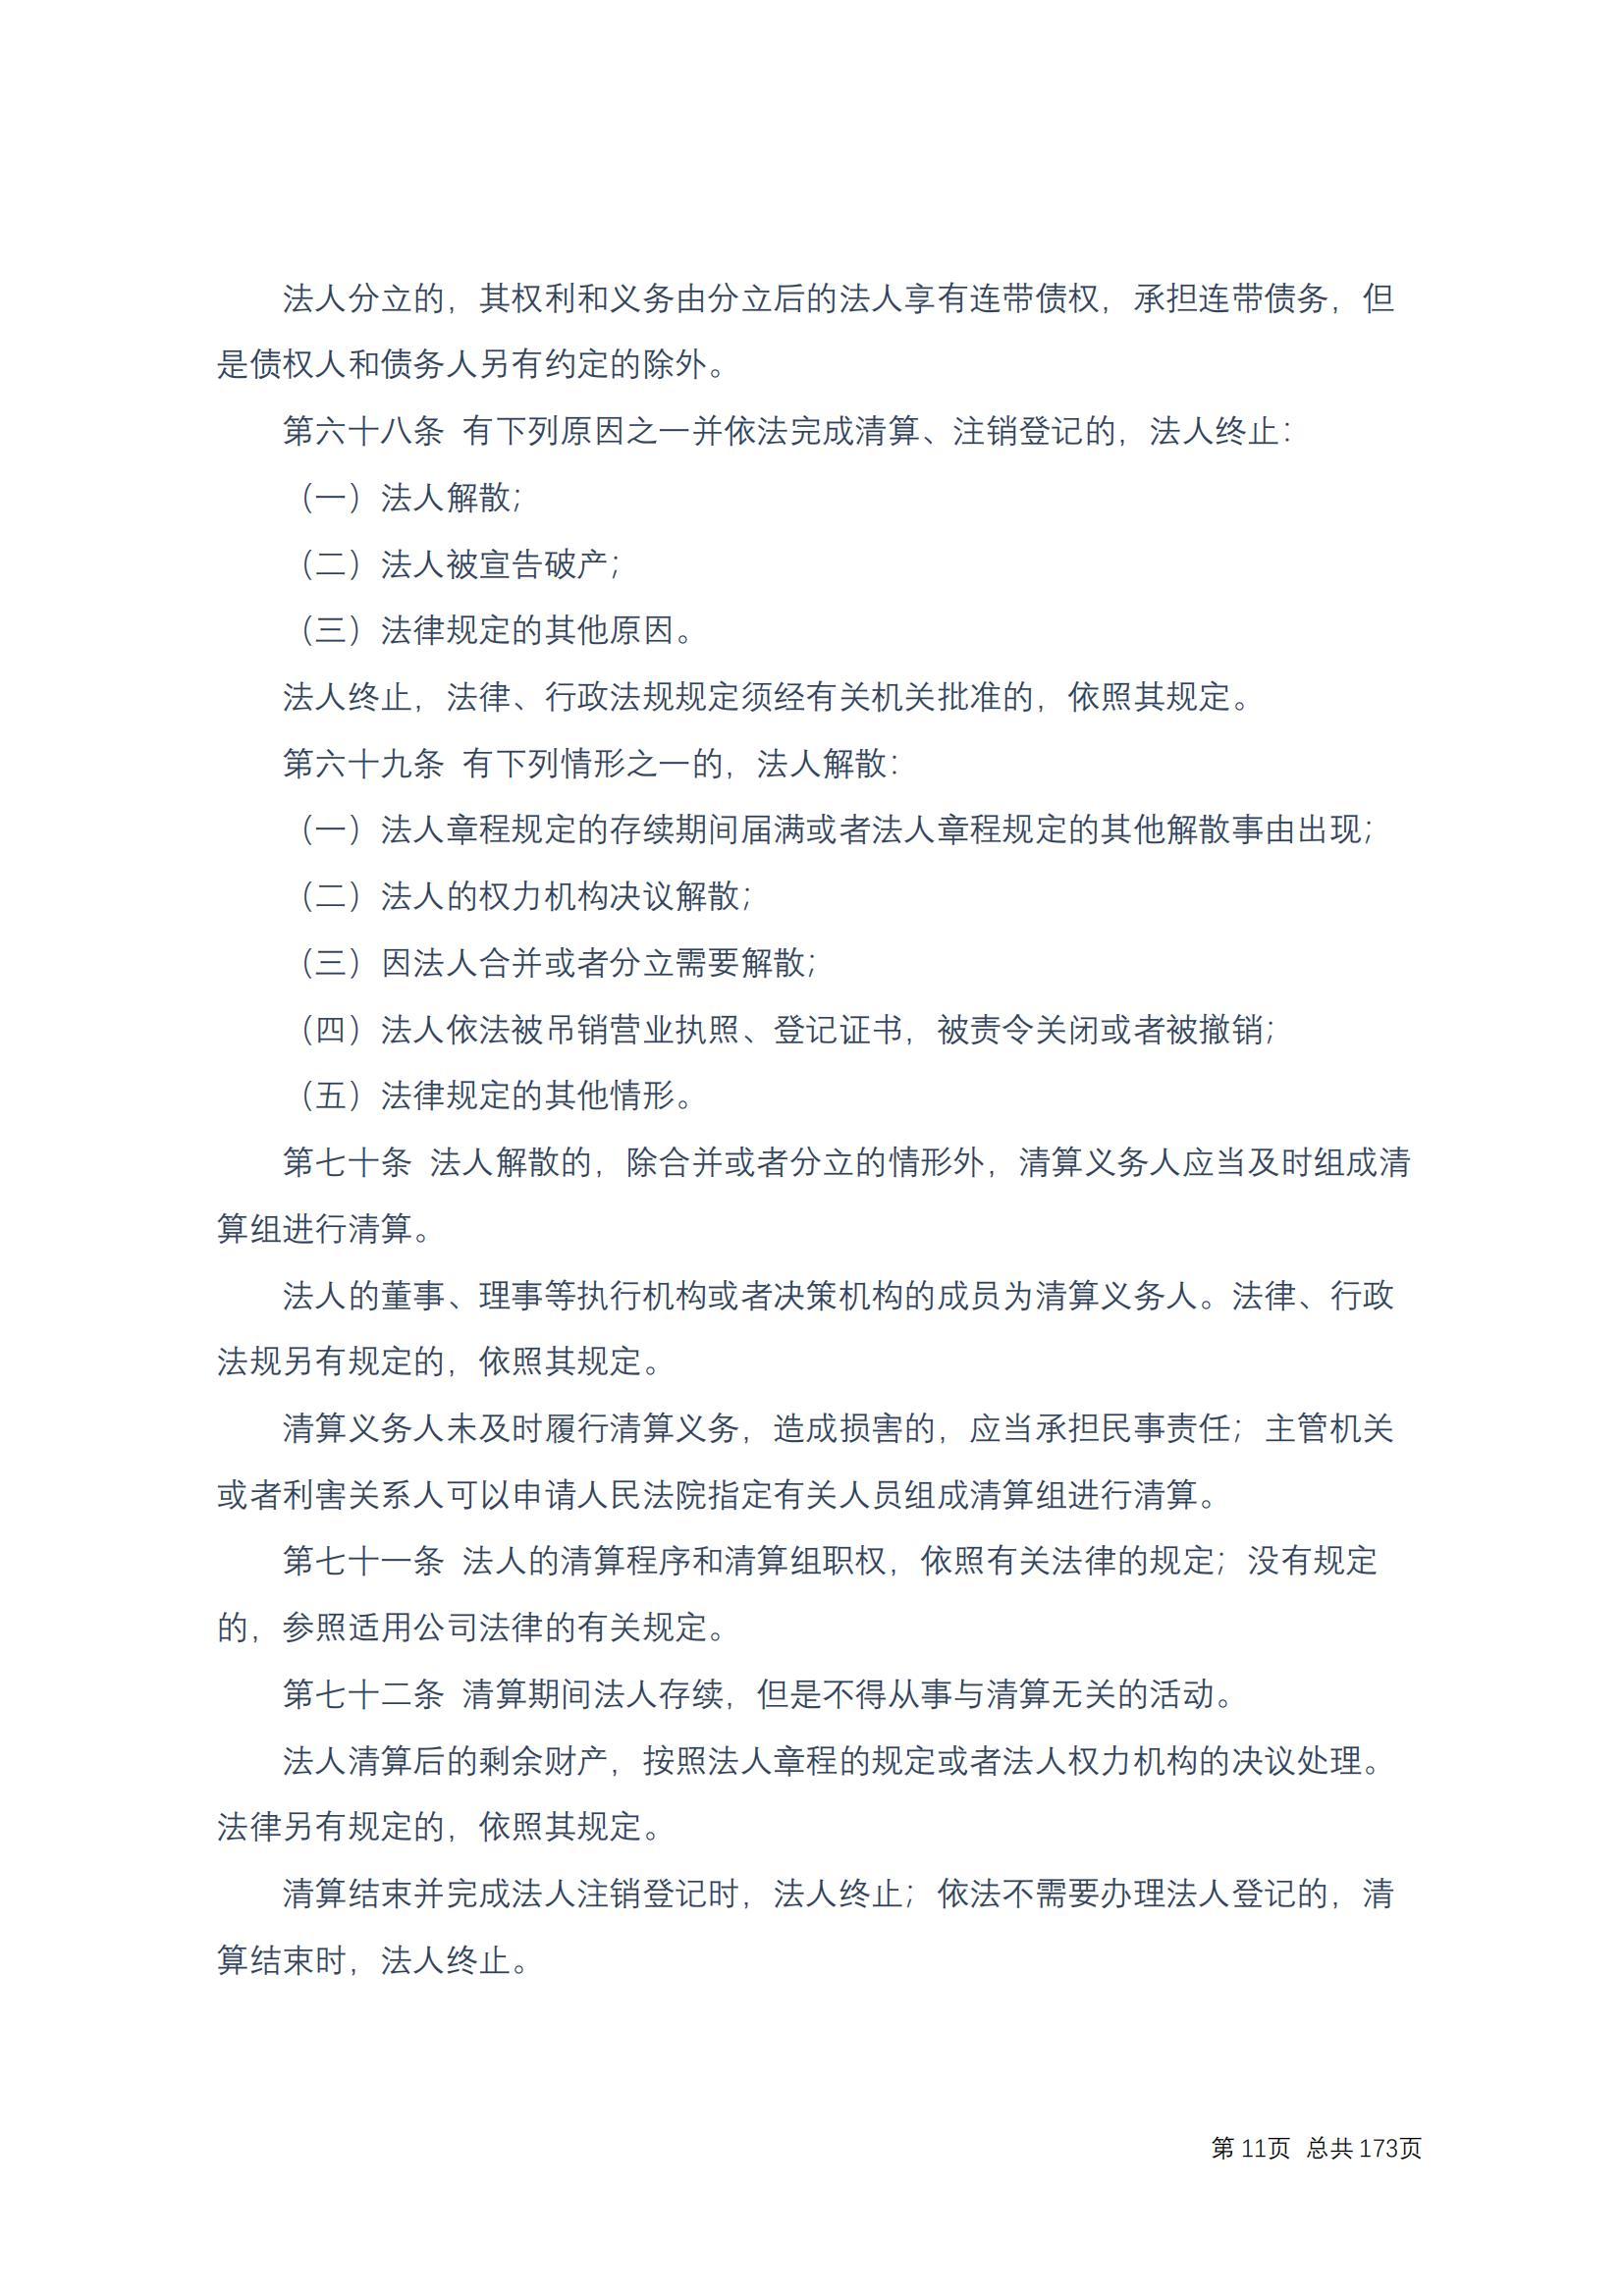 中华人民共和国民法典 修改过_10